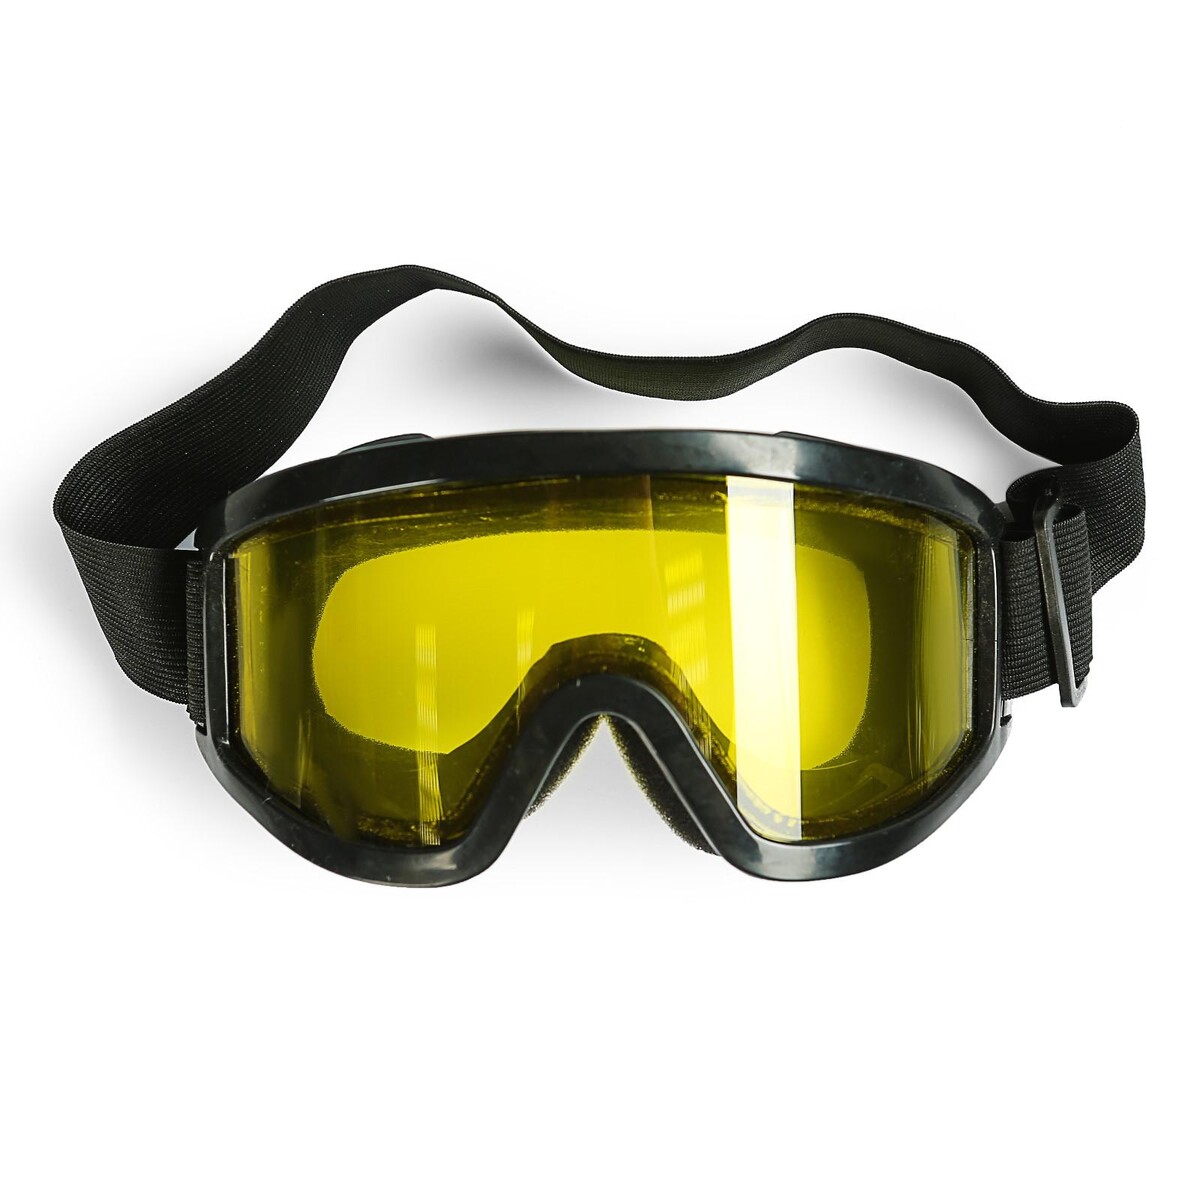 Очки-маска для езды на мототехнике, стекло двухслойное желтое, цвет черный очки маска для езды на мототехнике разборные стекло желтое